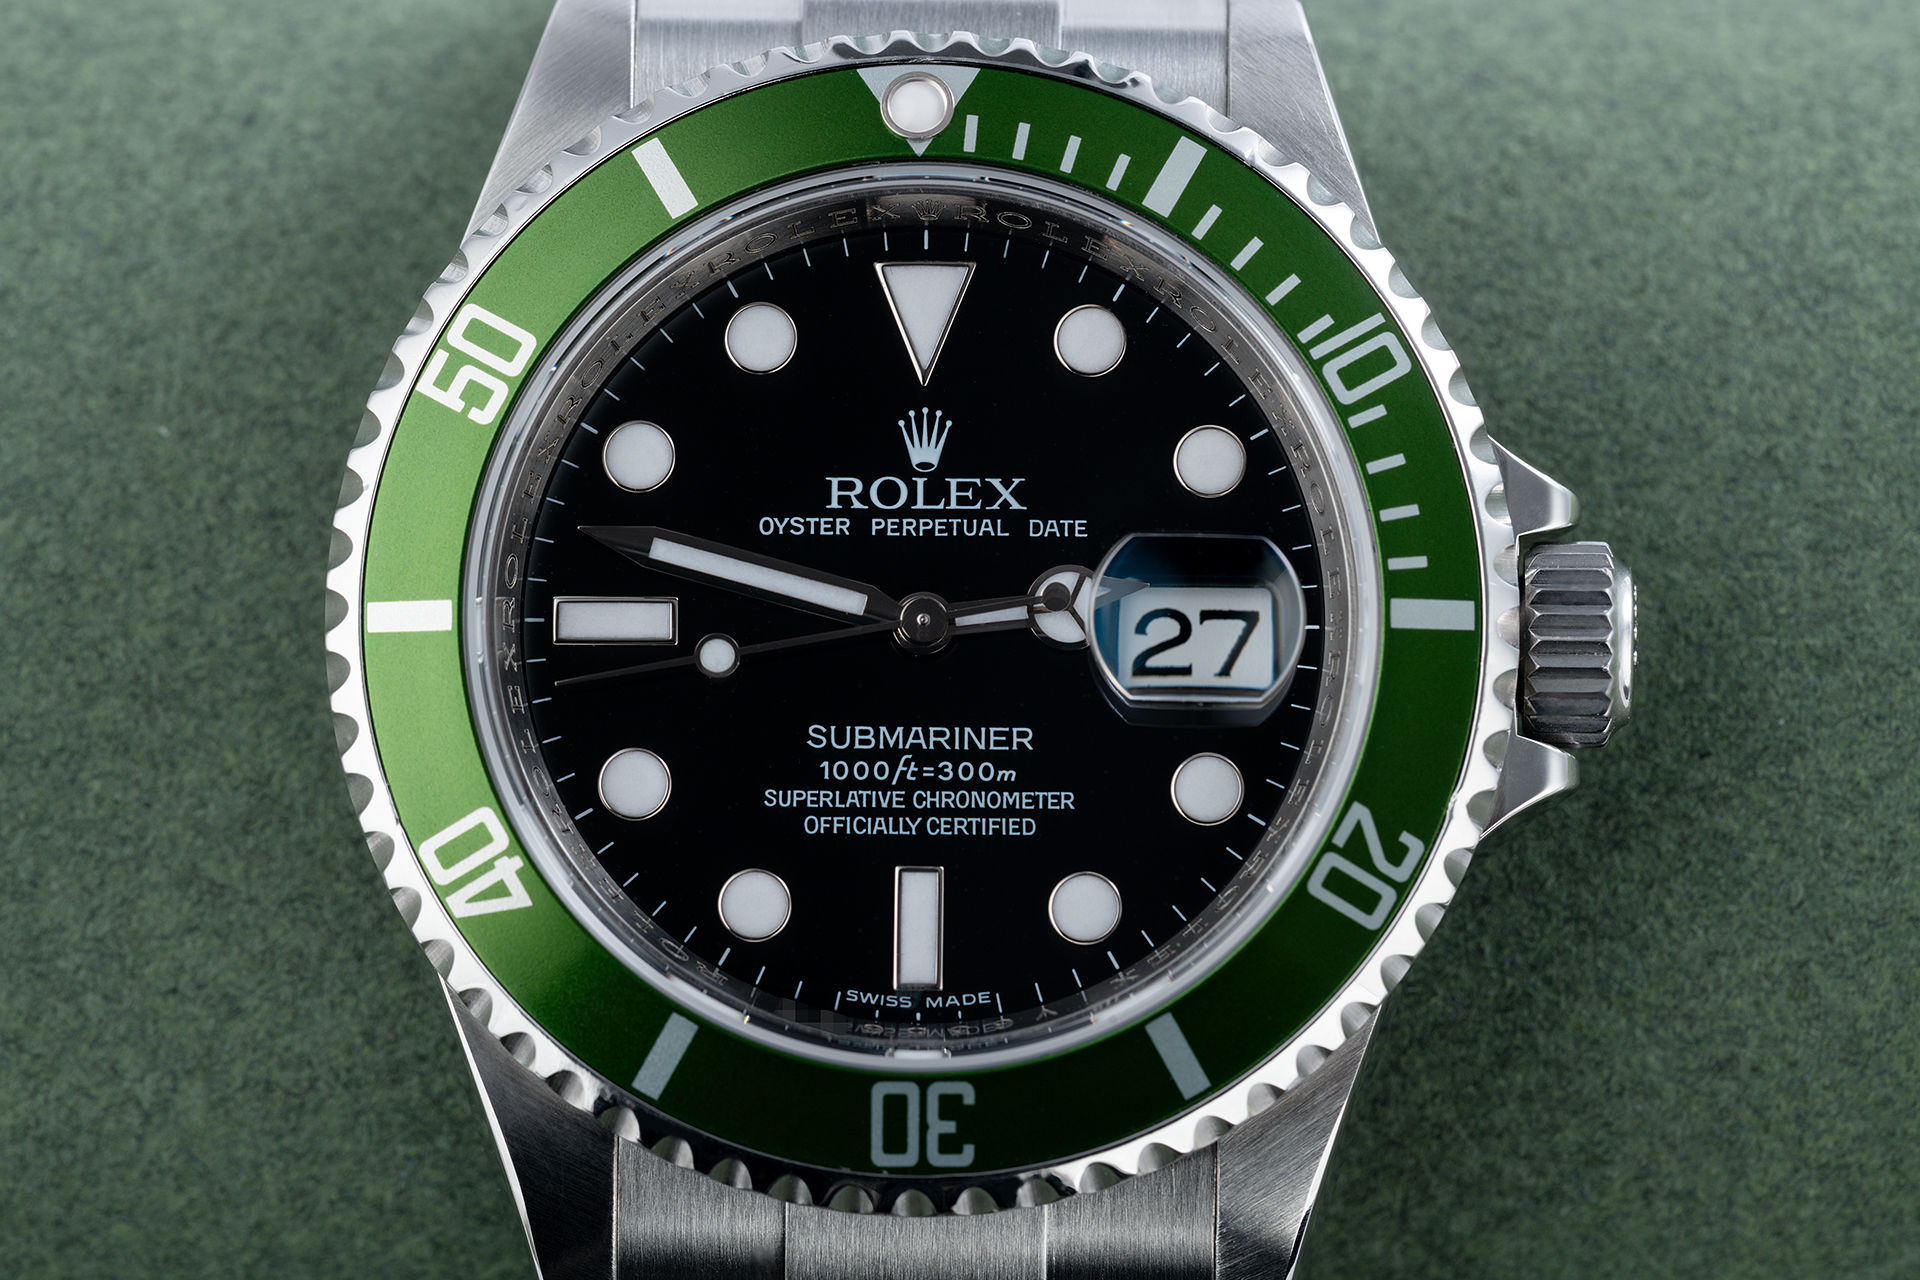 ref 16610LV | Olive Bezel 'Under Rolex Warranty' | Rolex Submariner Date